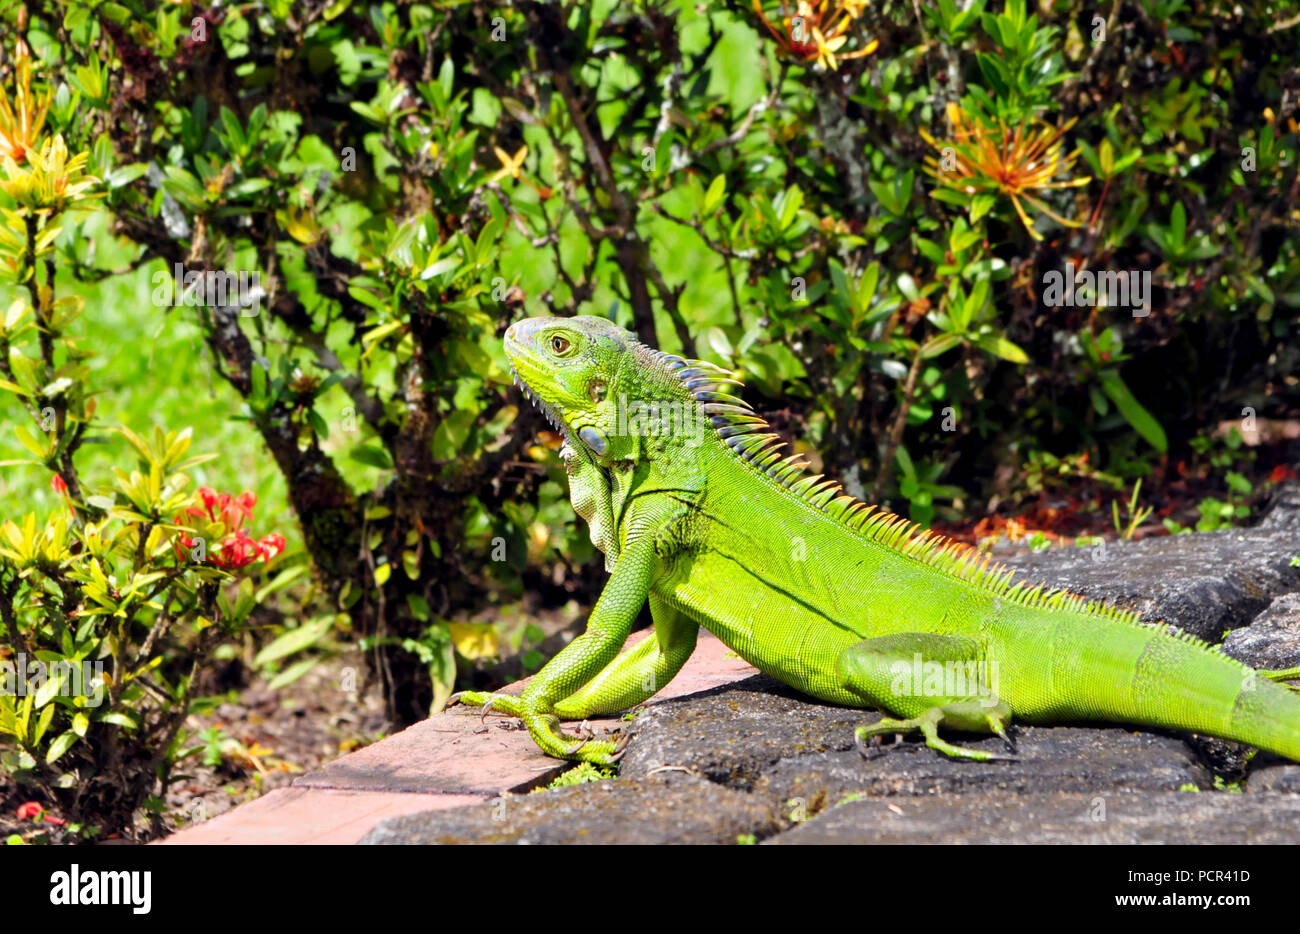 Green Iguana on a garden pathway taking the sun Stock Photo